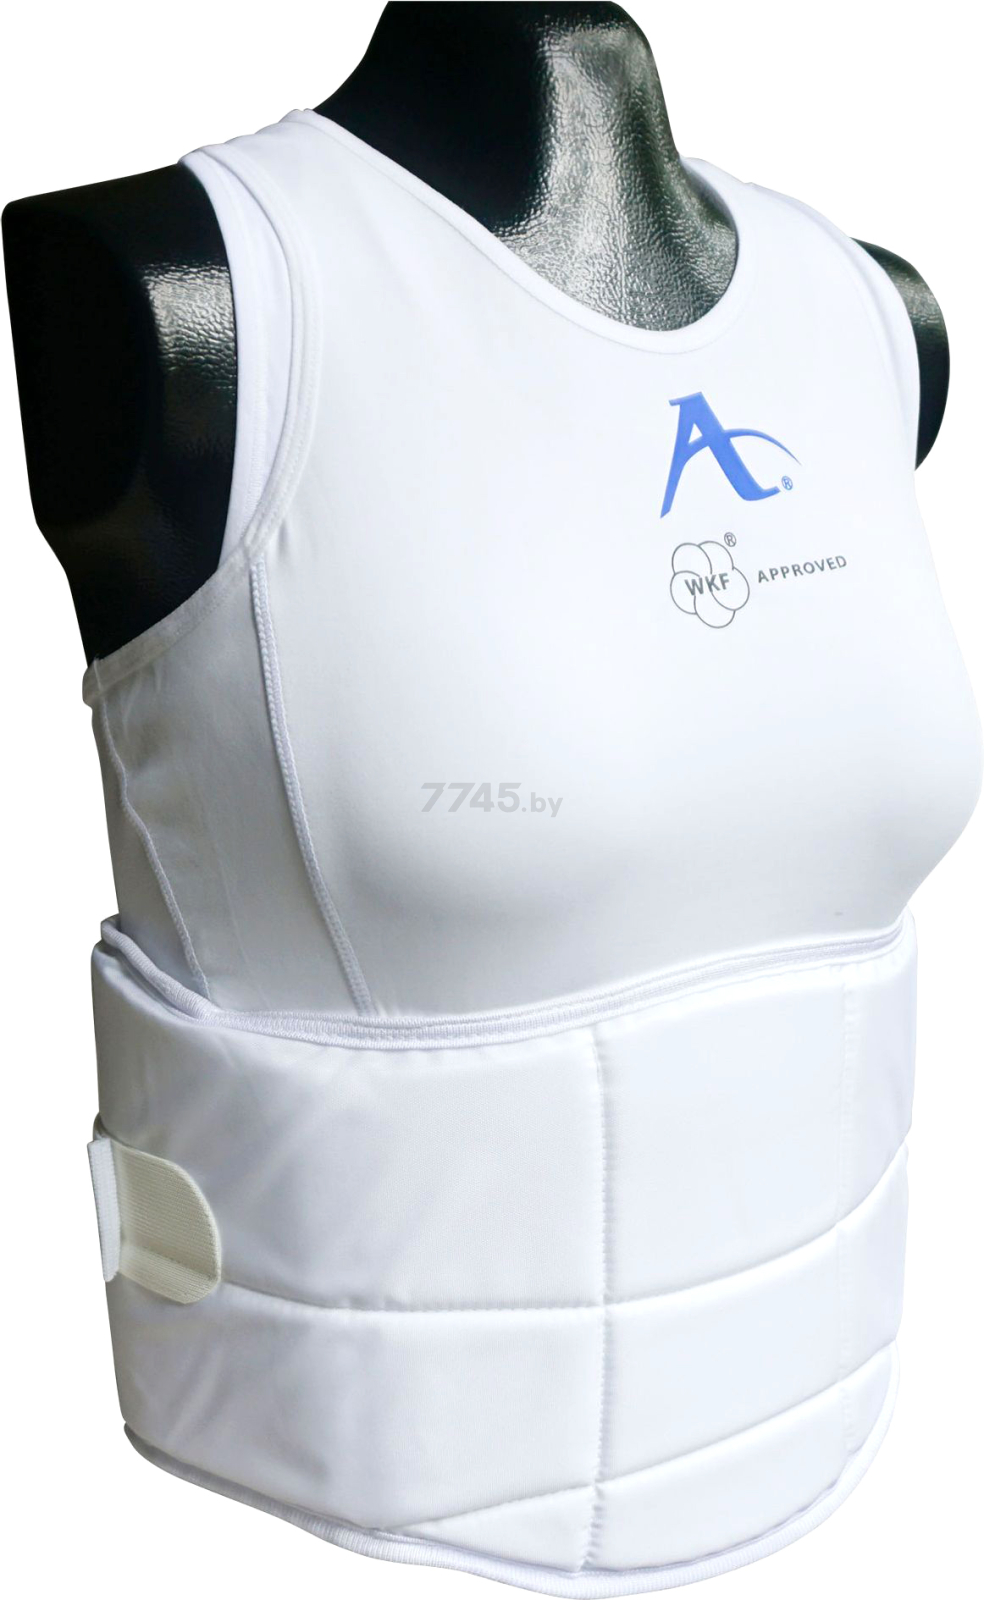 Защита груди и корпуса ARAWAZA WKF размер S (RCGBPWKFWS)